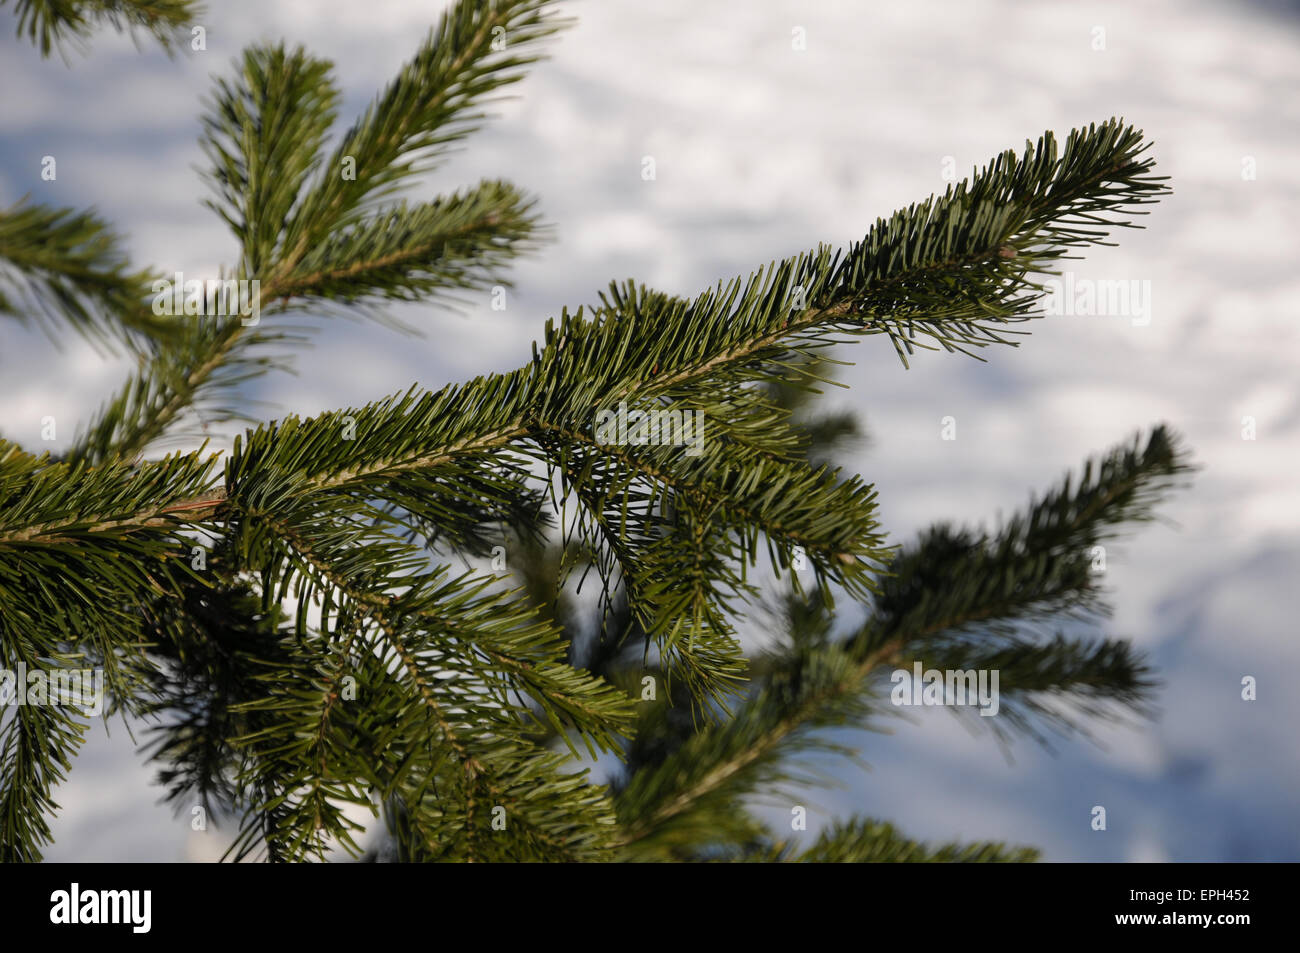 Siberian fir